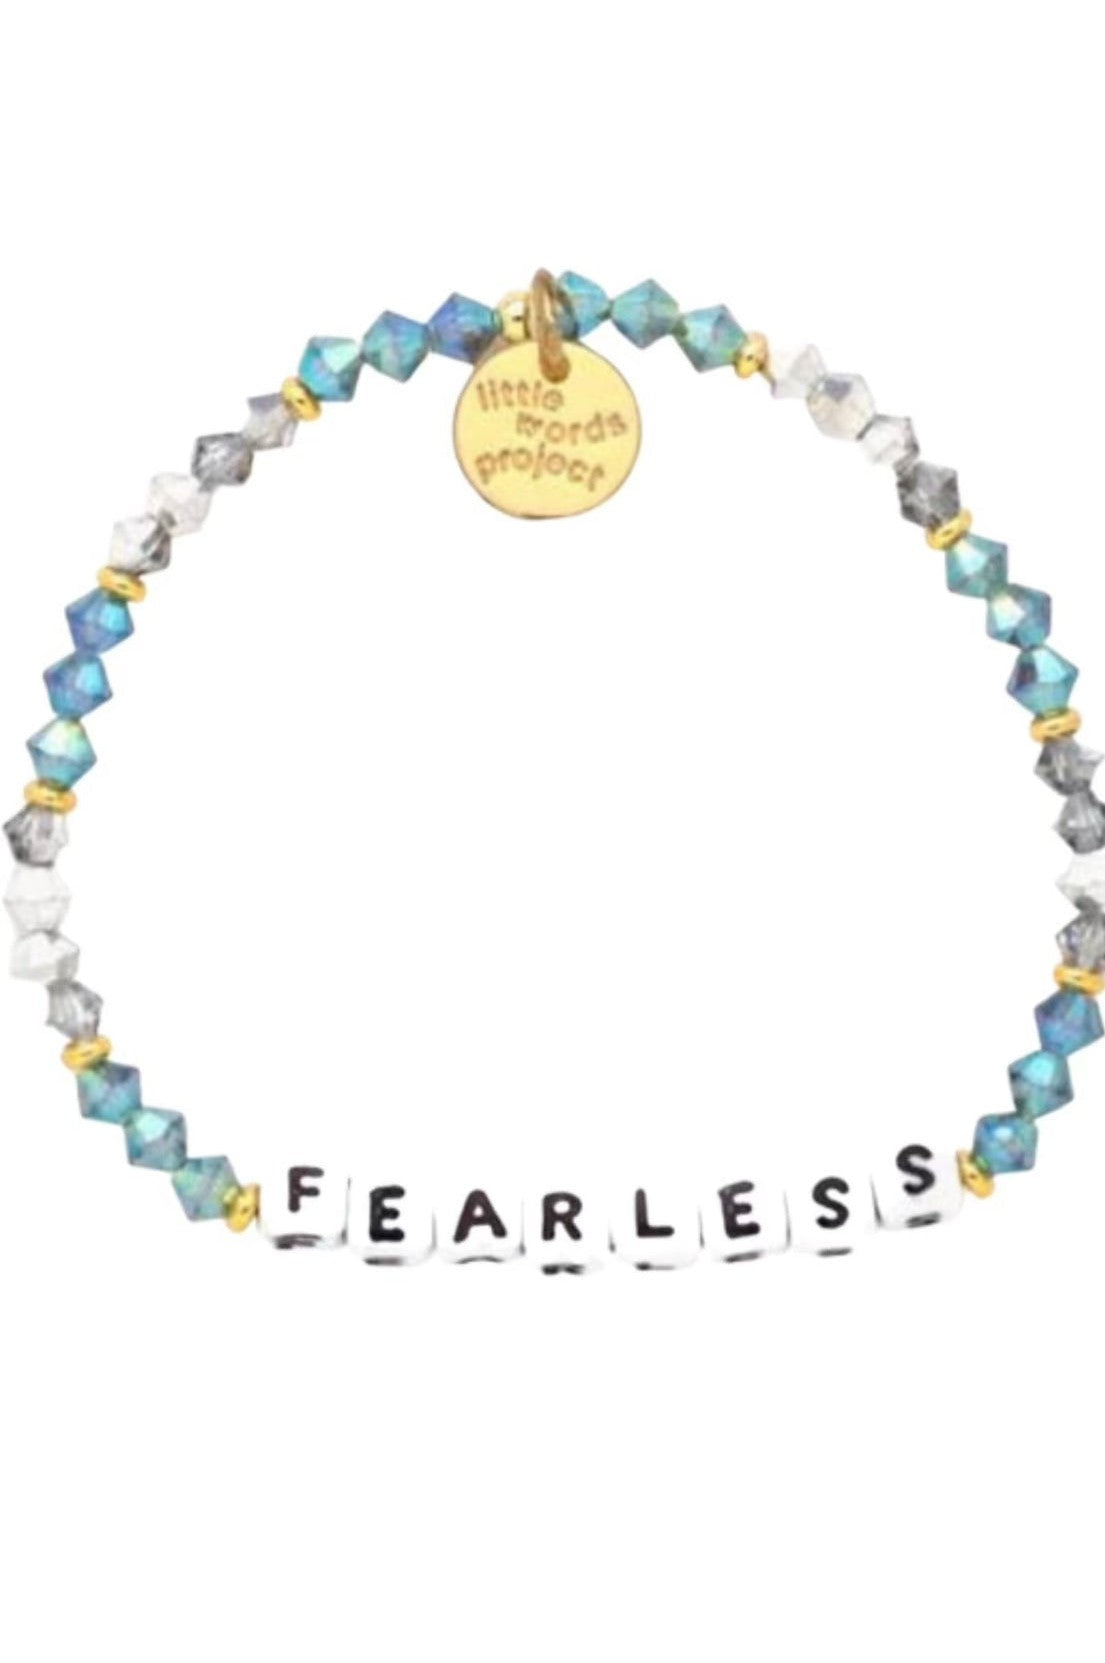 Fearless Bead Bracelet- Little Words Project